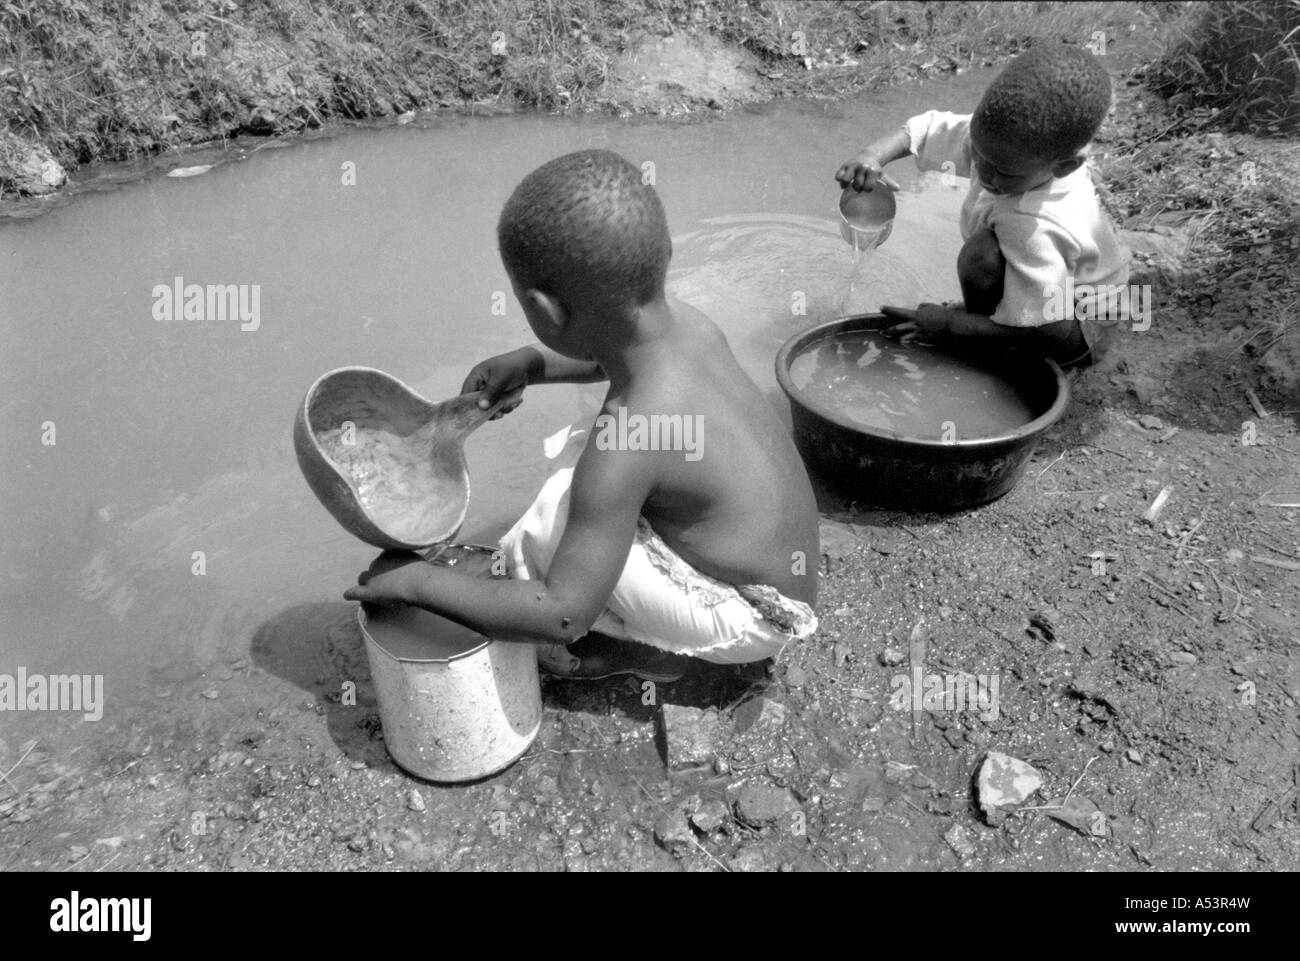 Painet ha1774 354 bianco e nero ragazzi di acqua raccolta potabile unsafe Sud Nyanza in Kenya paese nazione in via di sviluppo meno Foto Stock